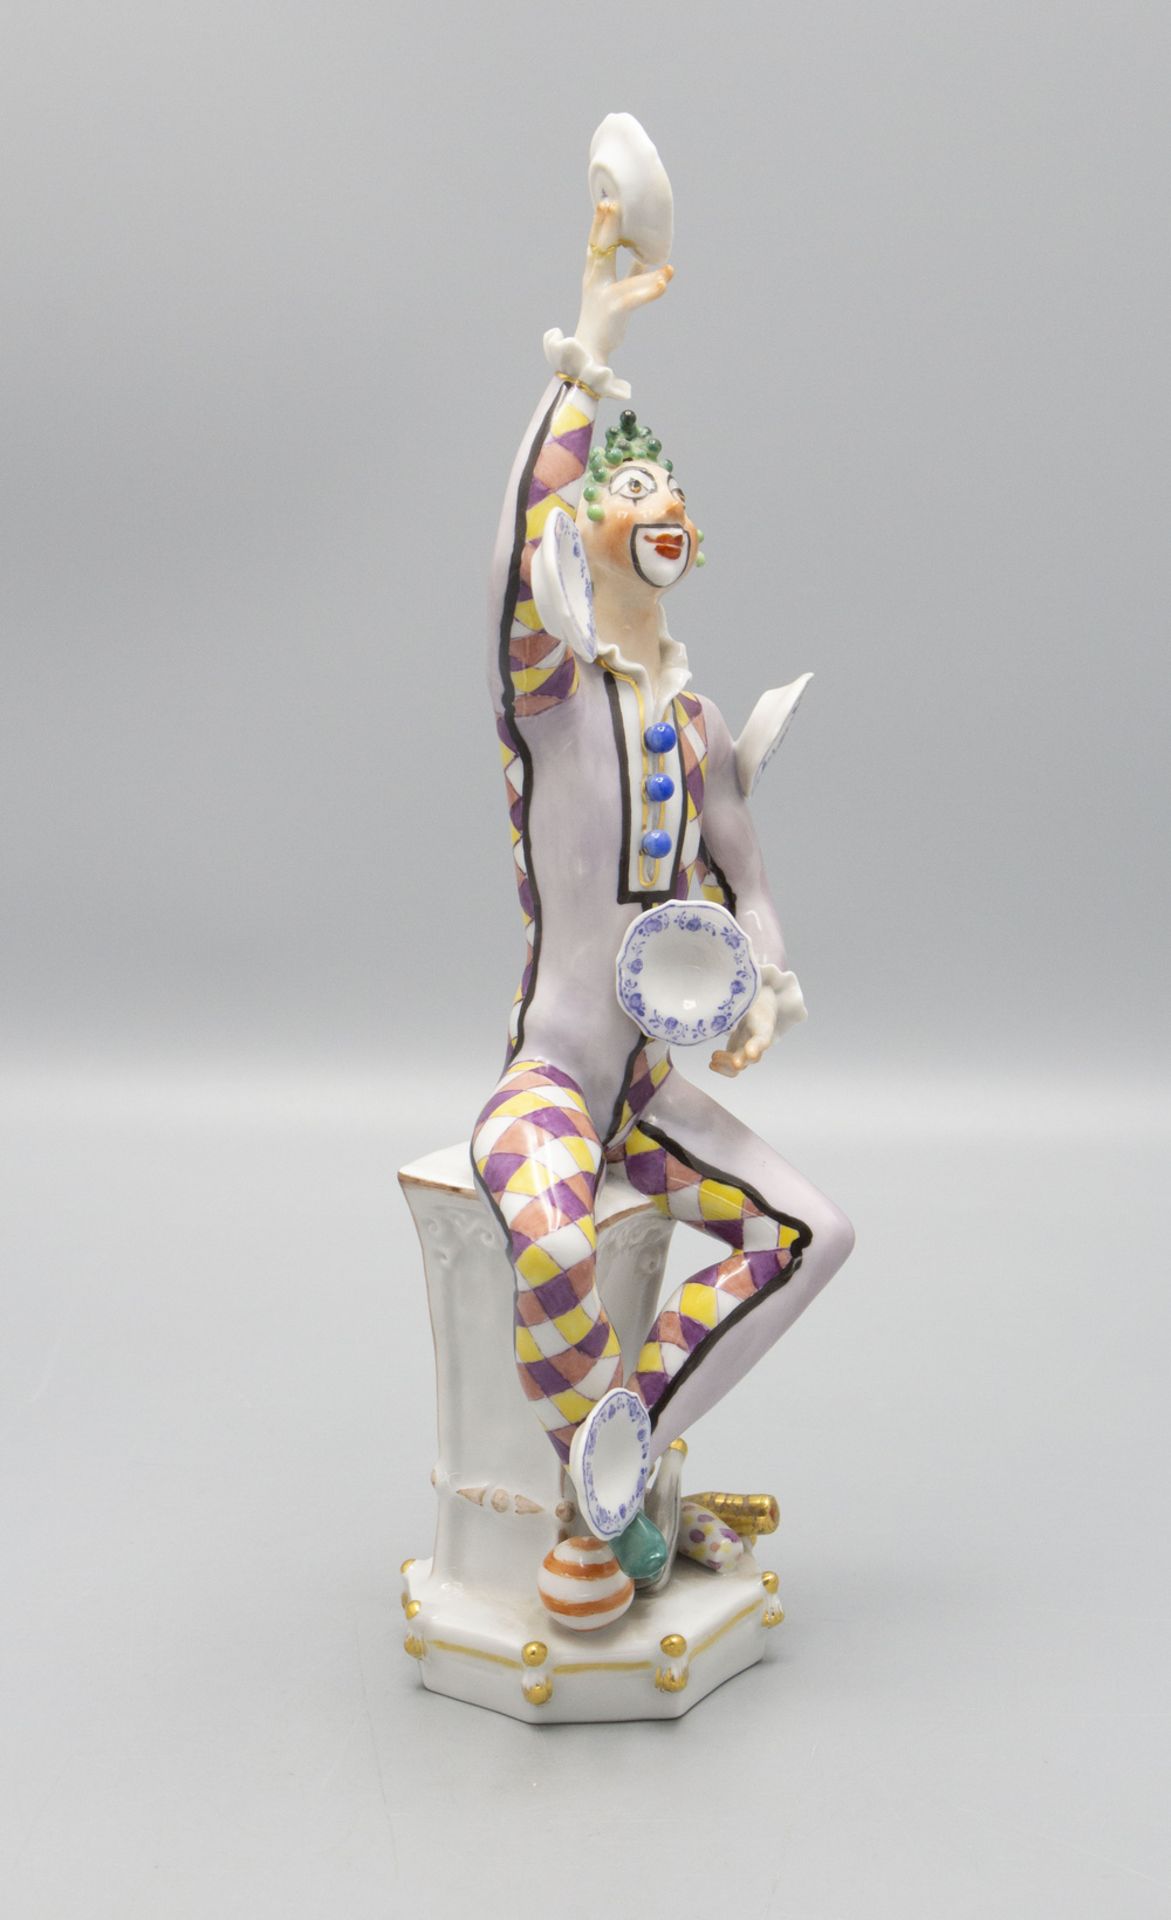 Porzellanfigur 'Der Jongleur' / A porcelain figurine 'The Juggler', Meissen, 1976 - Bild 4 aus 5